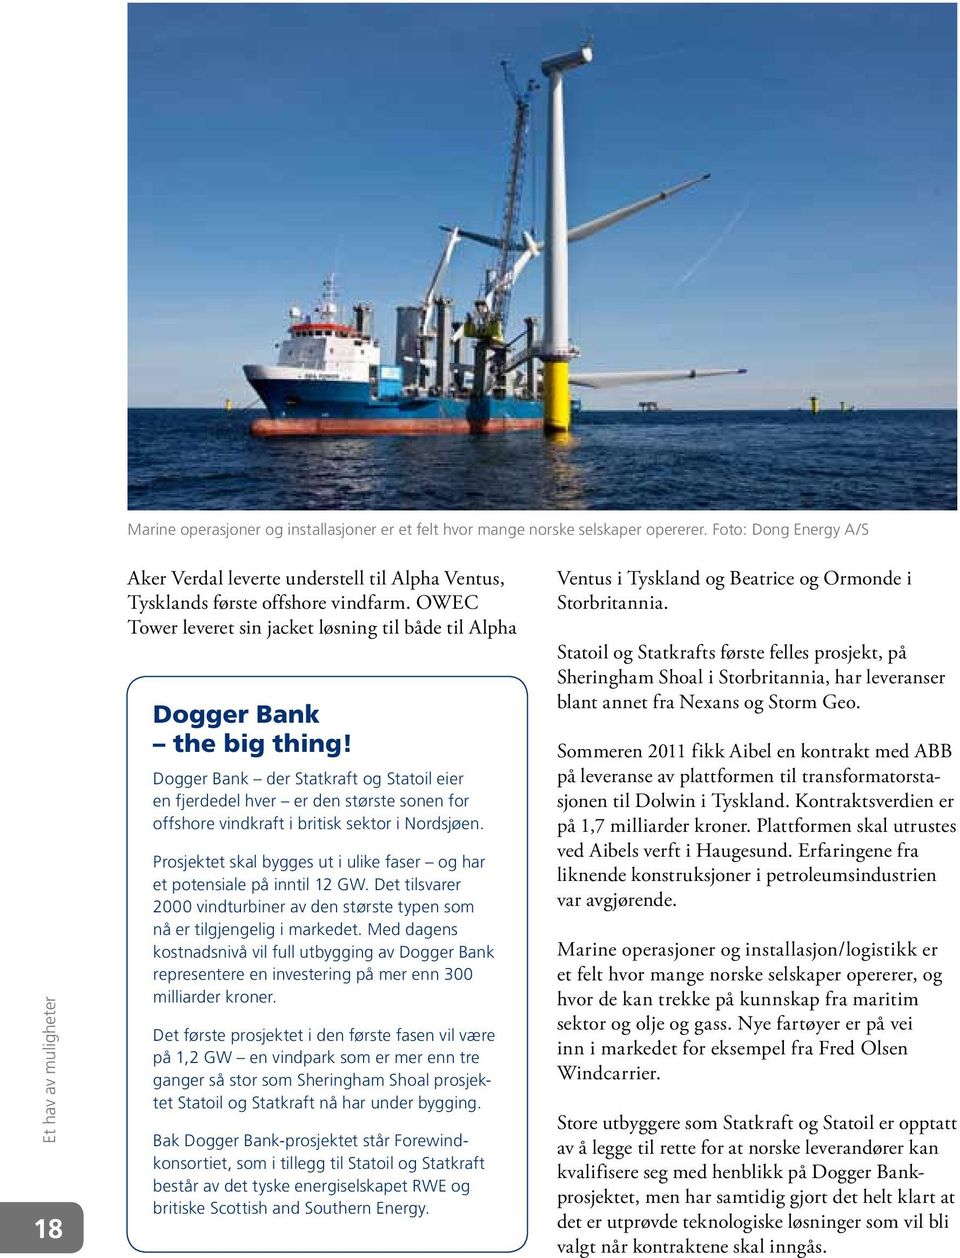 Dogger Bank der Statkraft og Statoil eier en fjerdedel hver er den største sonen for offshore vindkraft i britisk sektor i Nordsjøen.